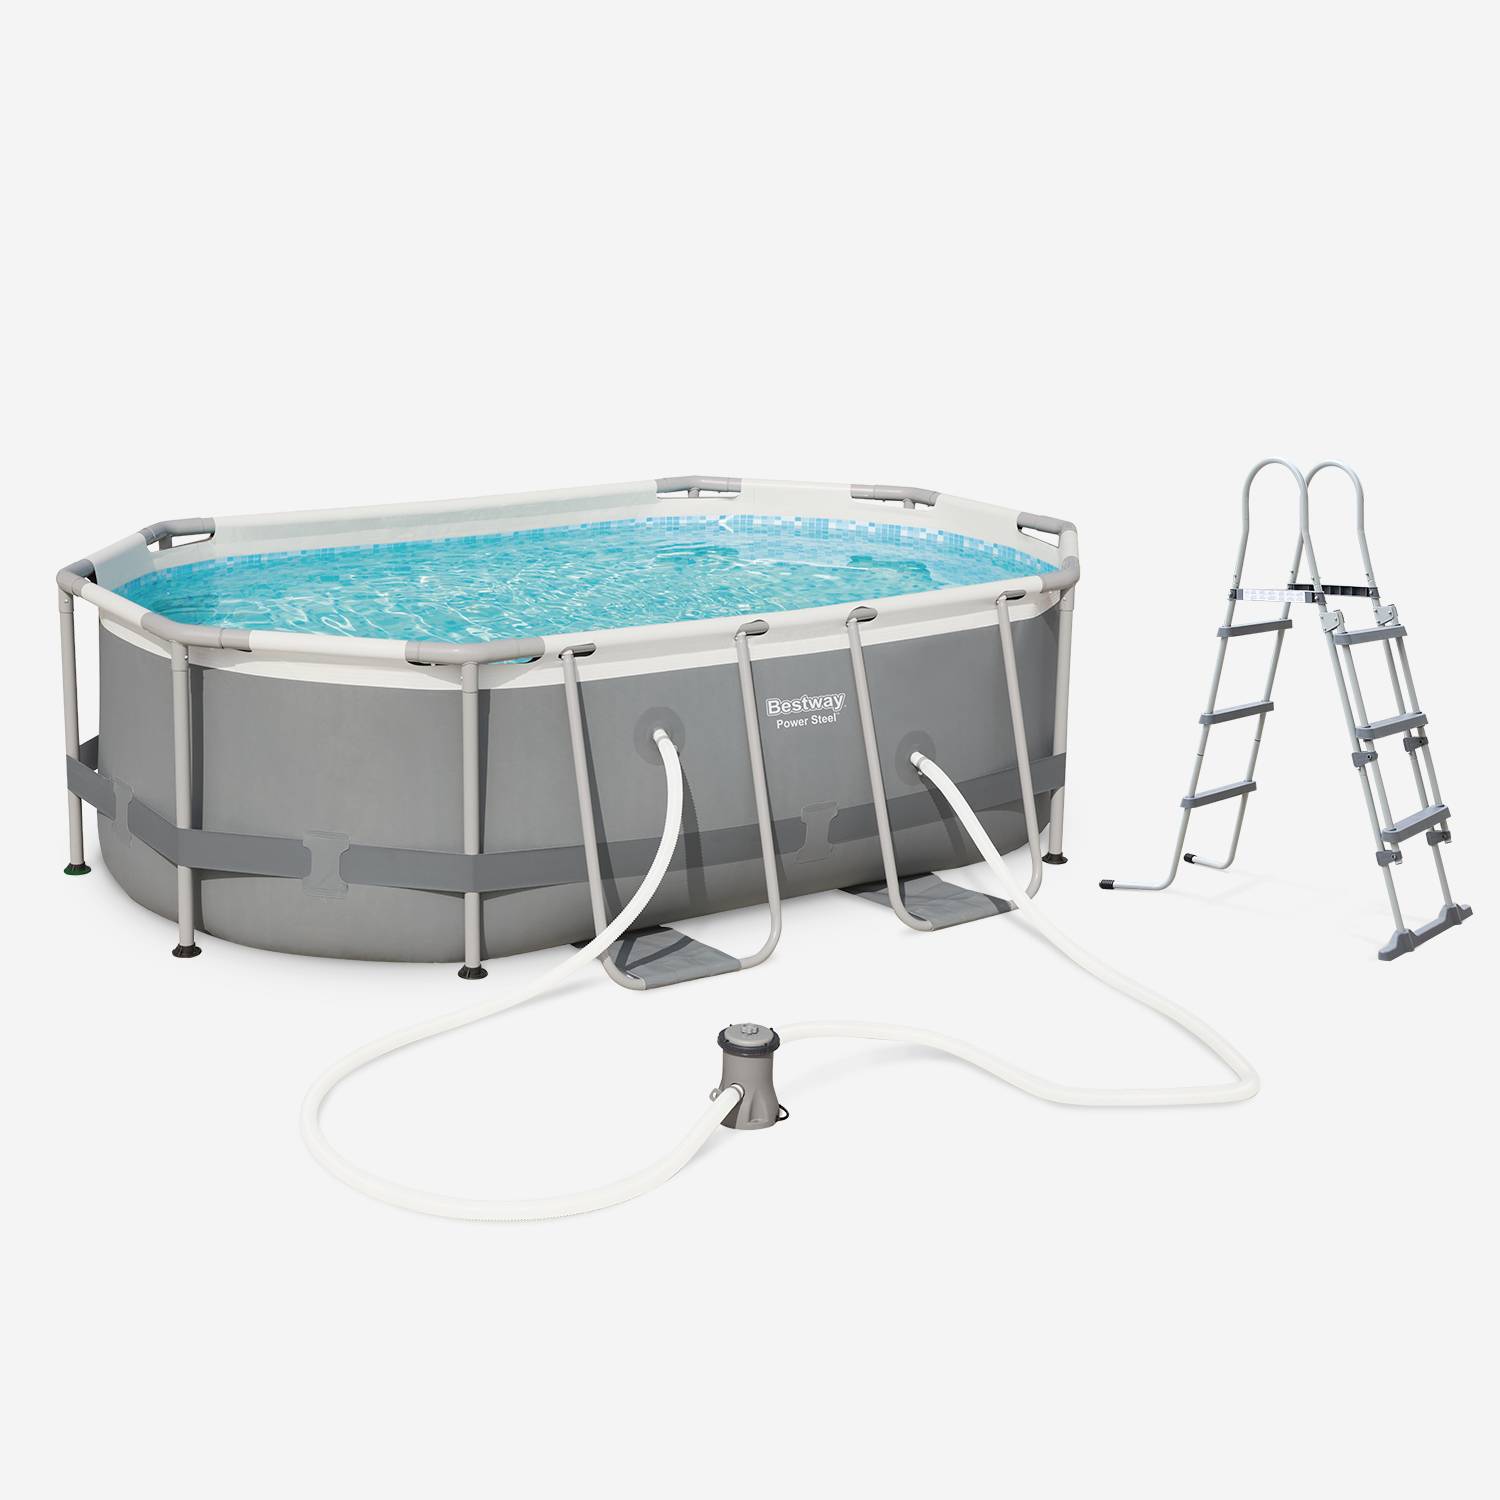 Piscine ovale tubulaire 3 x 2 m BESTWAY – Quartz grise –avec pompe de filtration et échelle grise 3 marches piscine hors sol armature acier Photo1